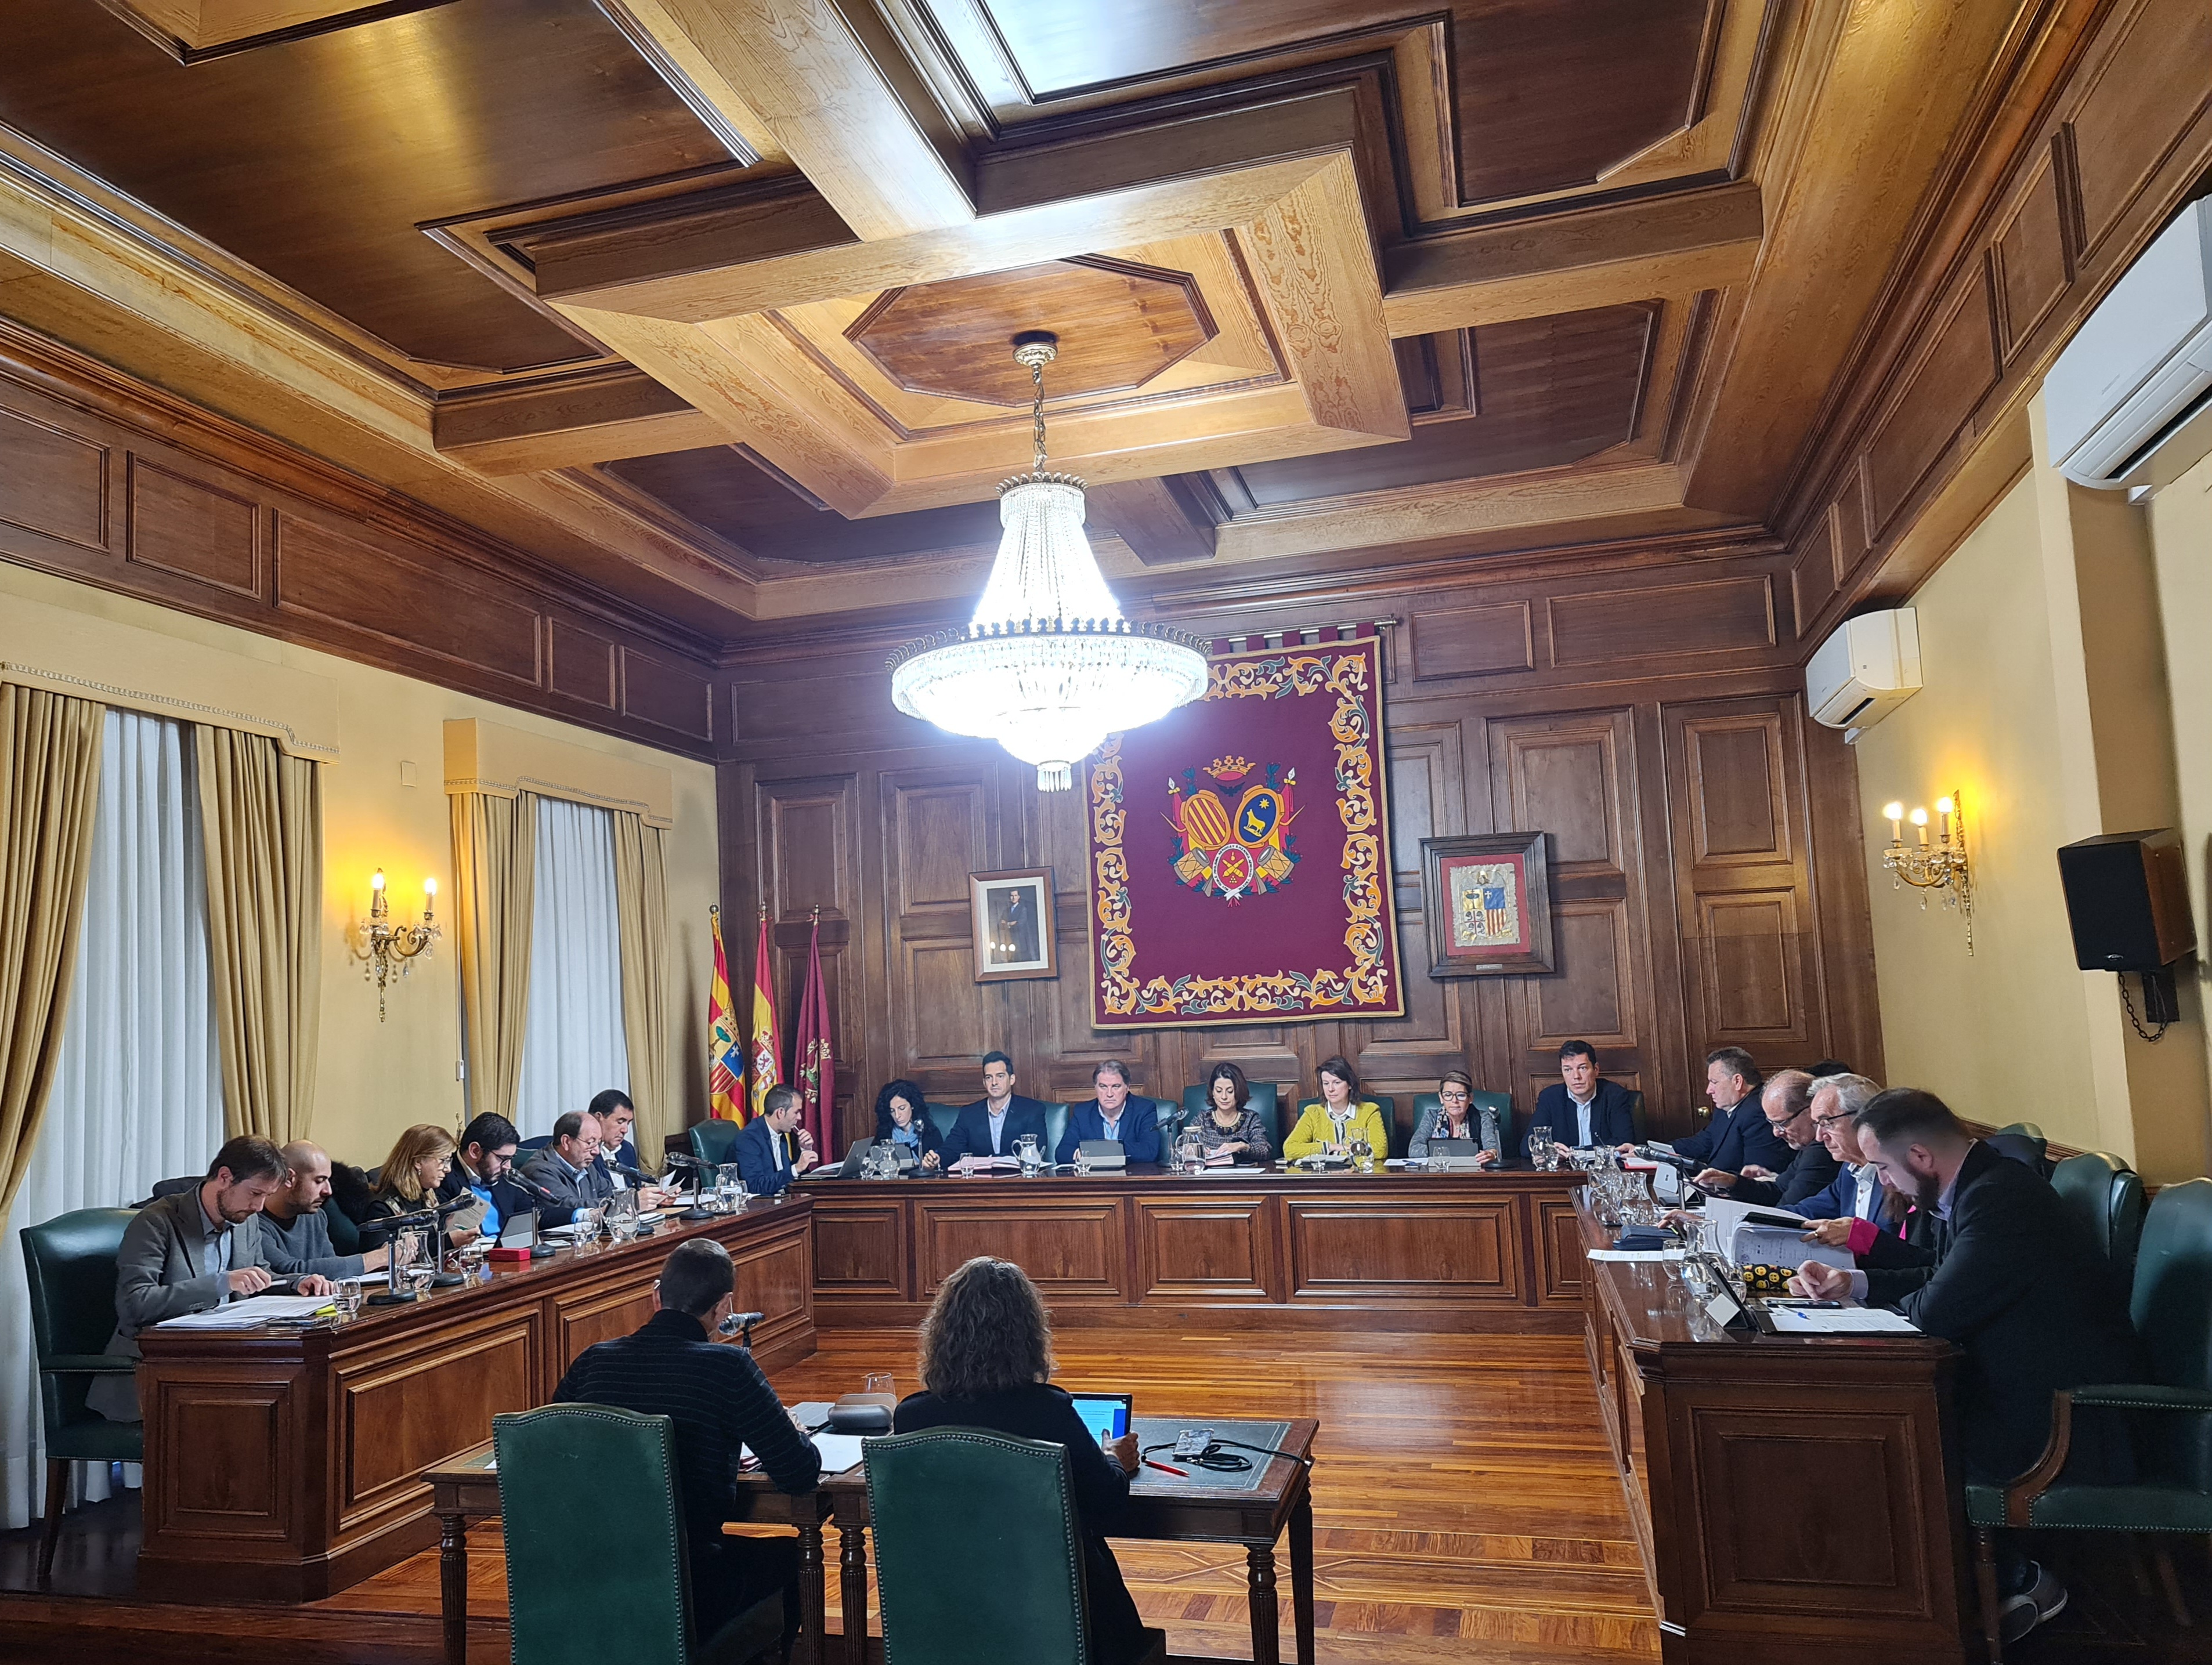 El pleno del Ayuntamiento de Teruel aprueba la gratuidad del autobÃºs urbano para menores hasta 8 aÃ±os incluido a partir de 2023